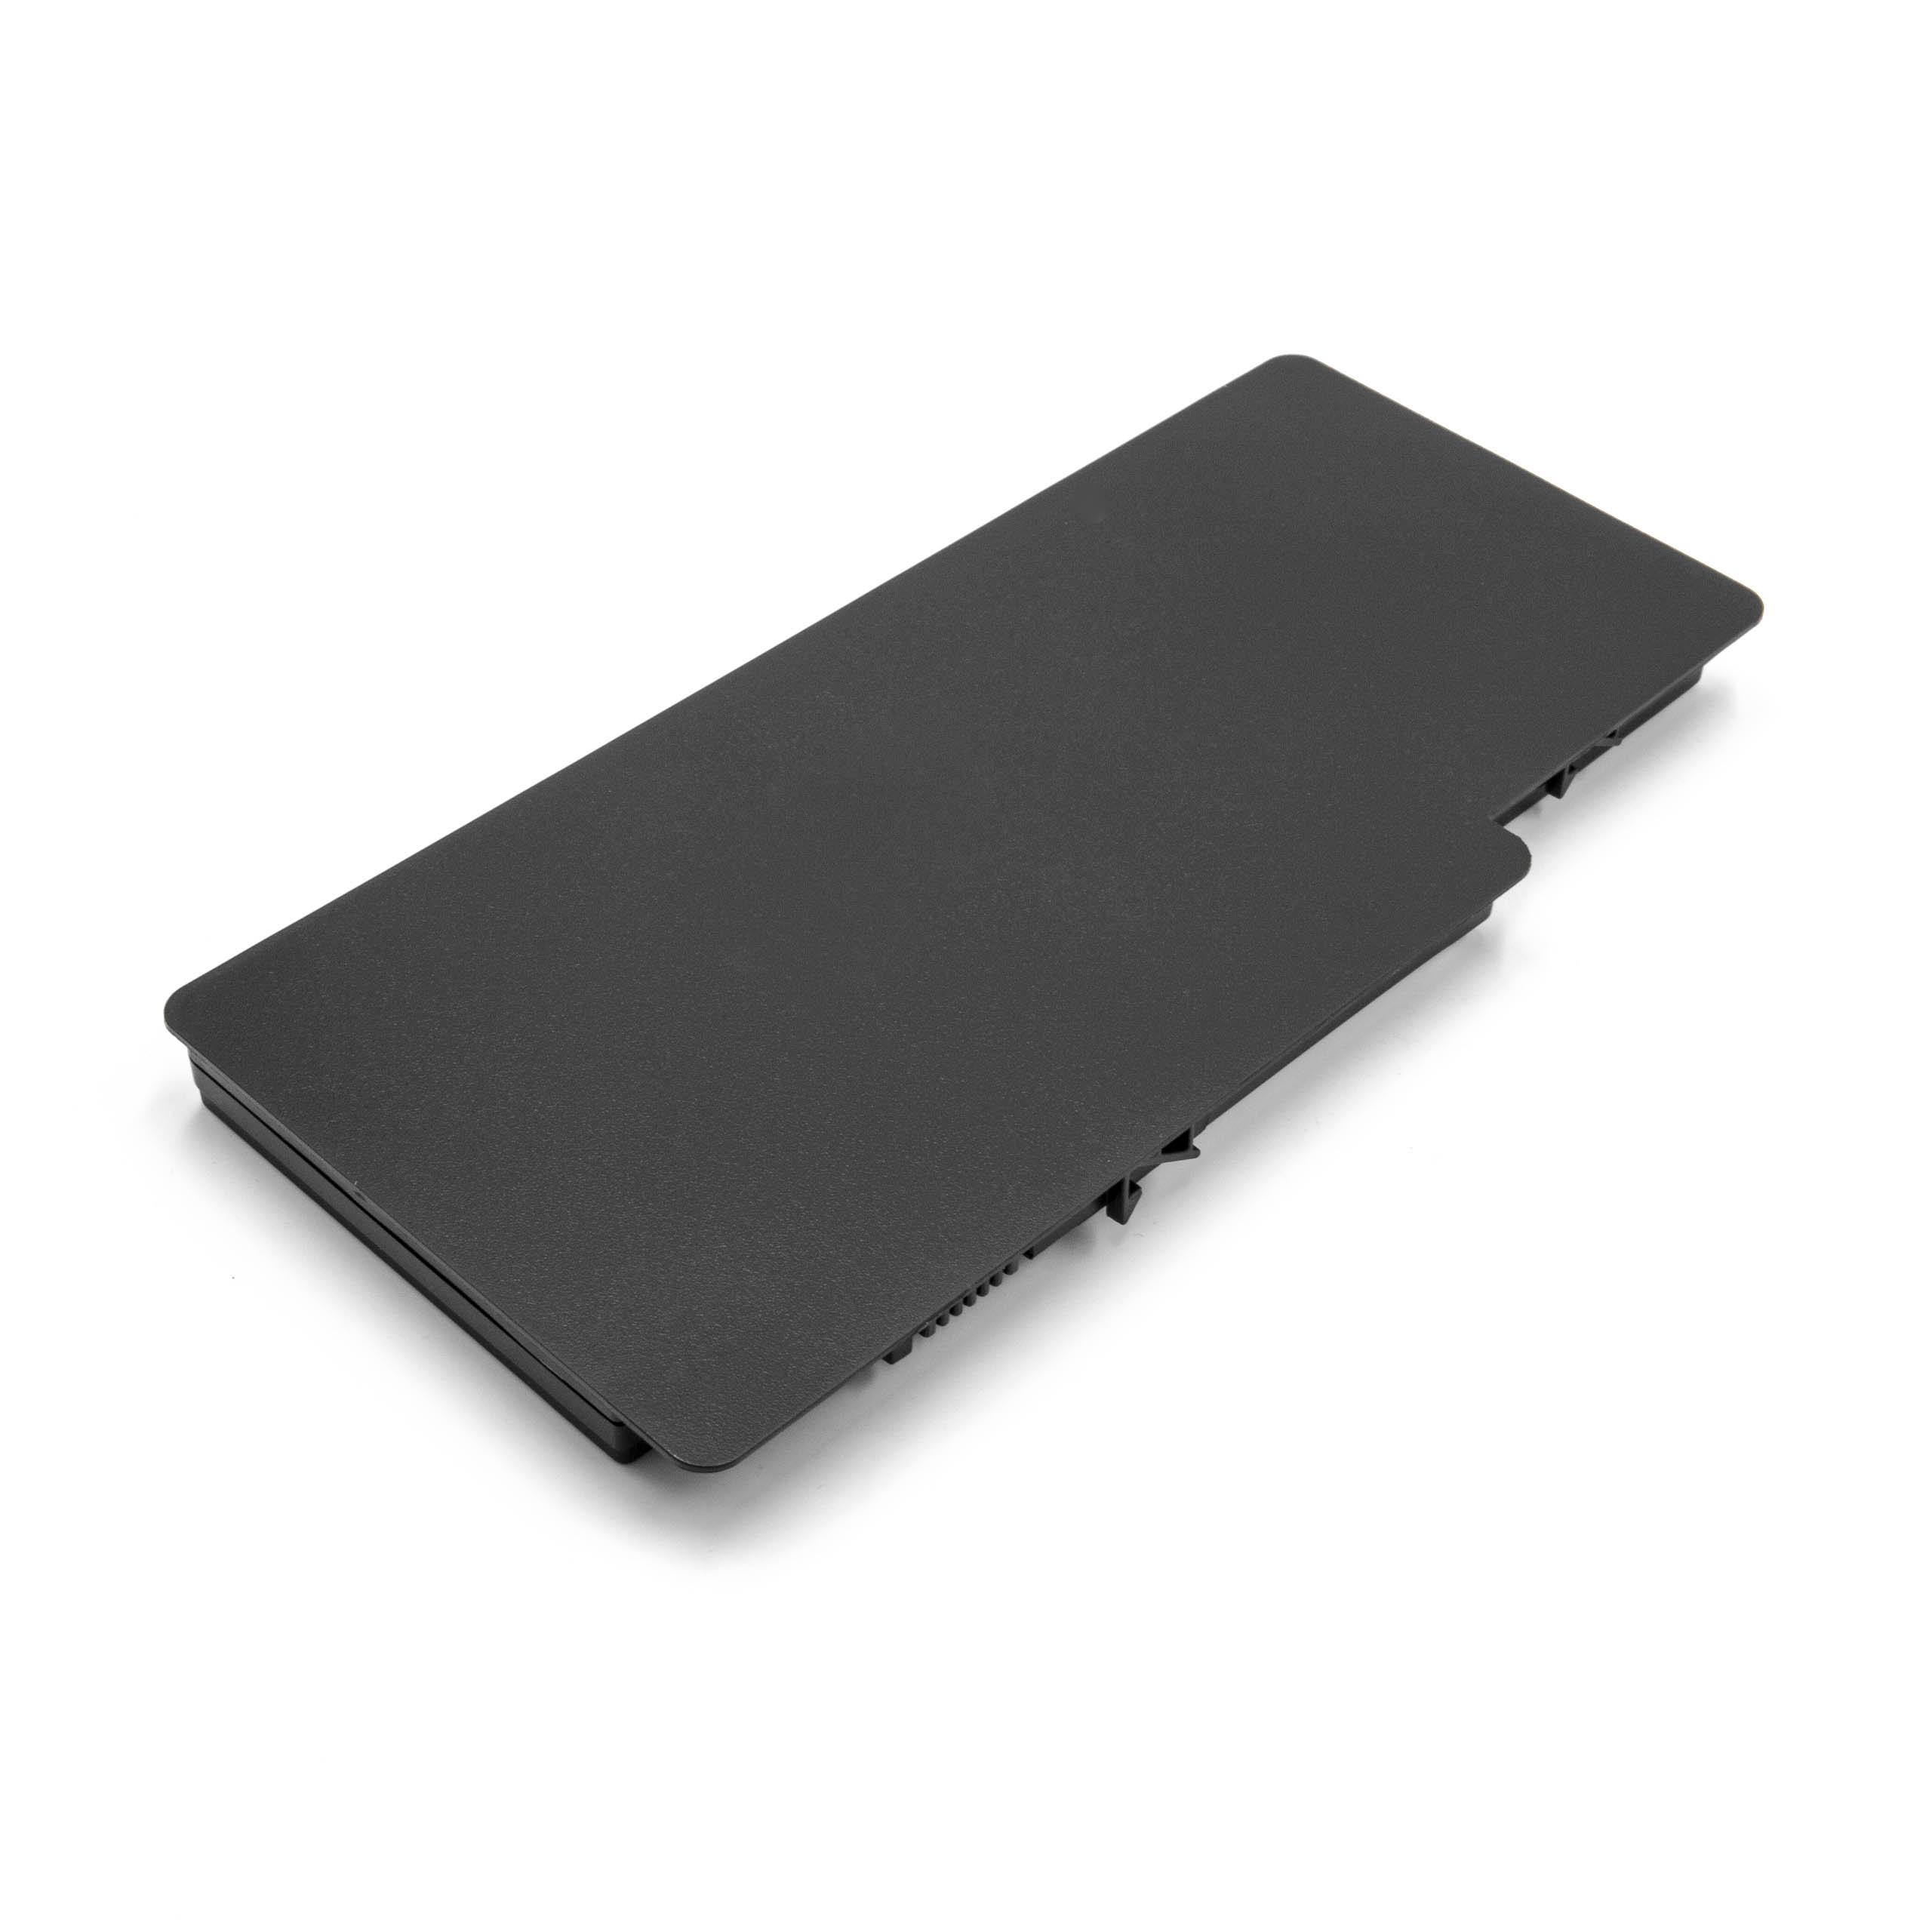 Batería reemplaza HSTNN-OB0L para notebook HP - 5200 mAh 11,1 V Li-poli negro